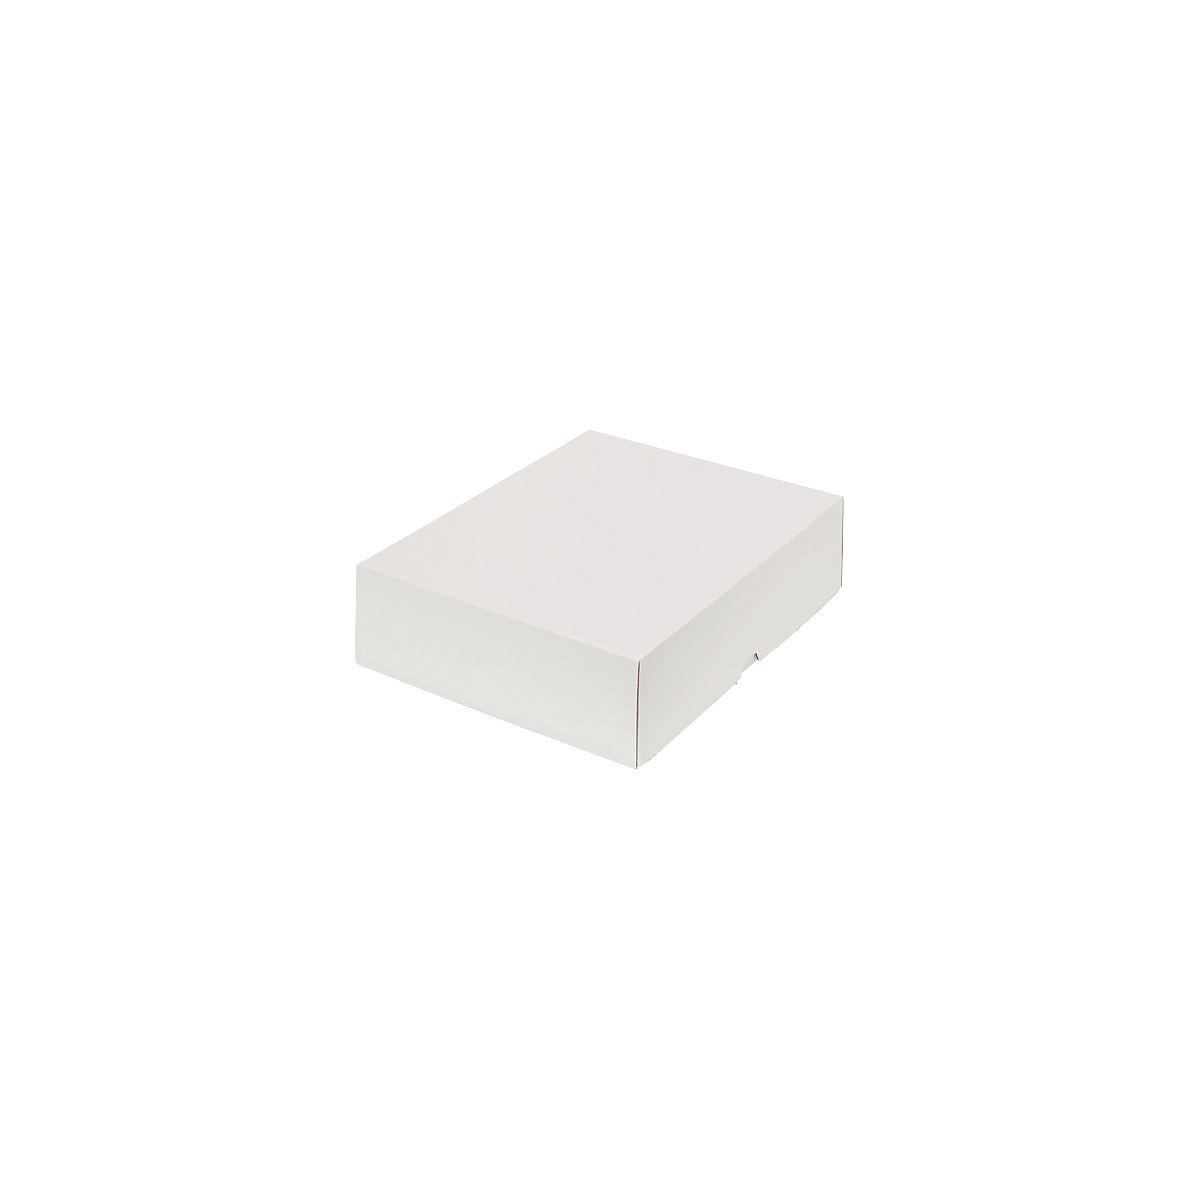 Stülpdeckelkarton, zweiteilig, Innenmaße 320 x 240 x 80 mm, A4+, weiß, ab 100 Stk-15